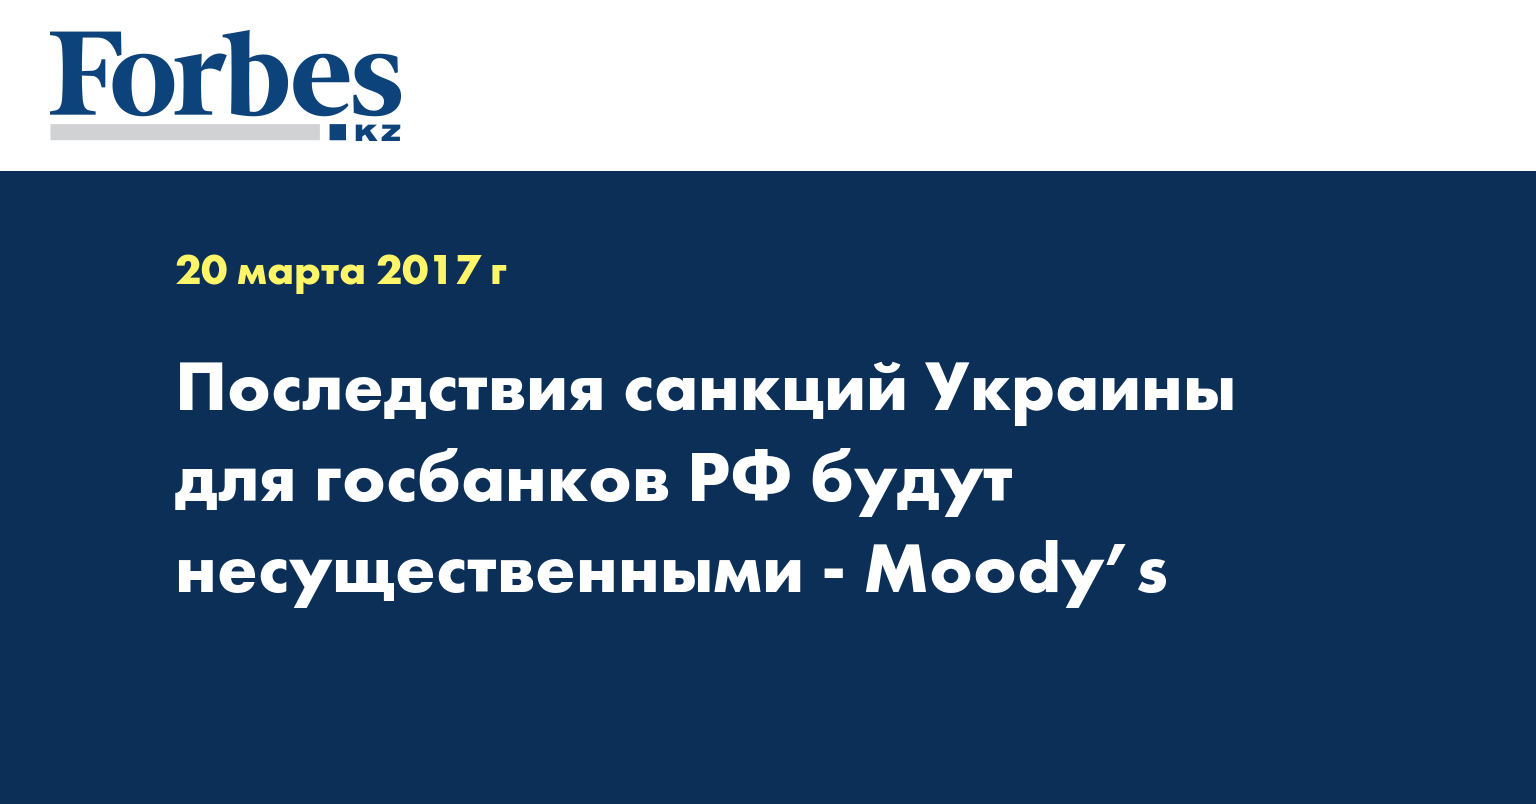 Последствия санкций Украины для госбанков РФ будут несущественными - Moody’s